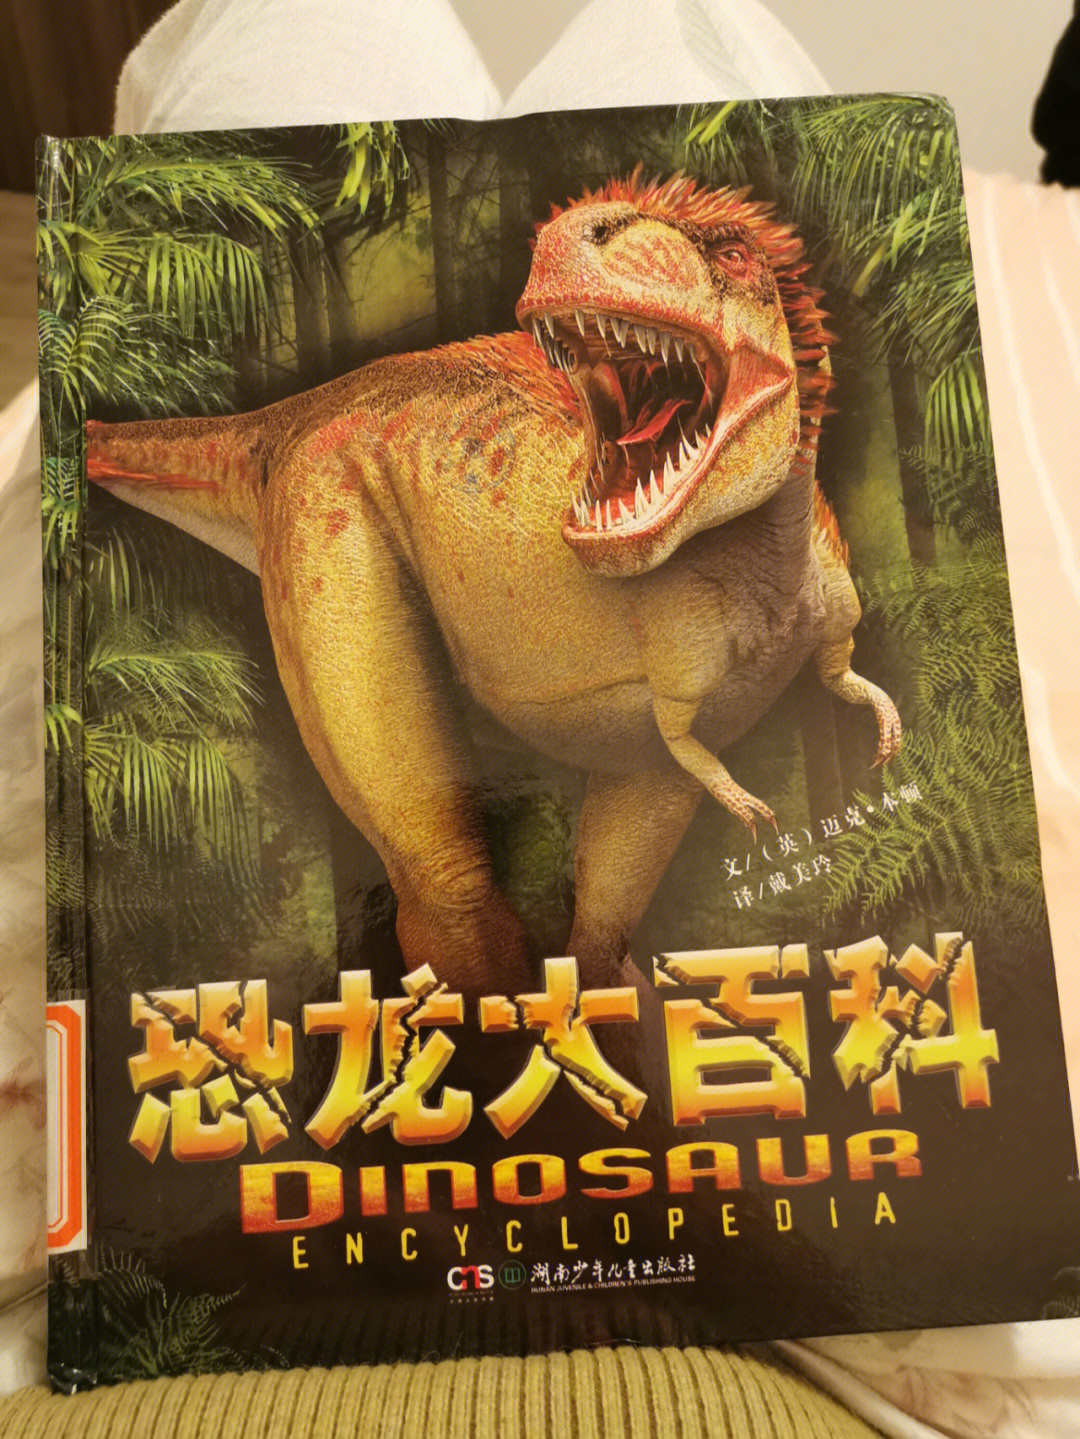 昨晚陪小孩讲了一个小时《恐龙大百科》,讲到翼龙不是恐龙,而是侏罗纪